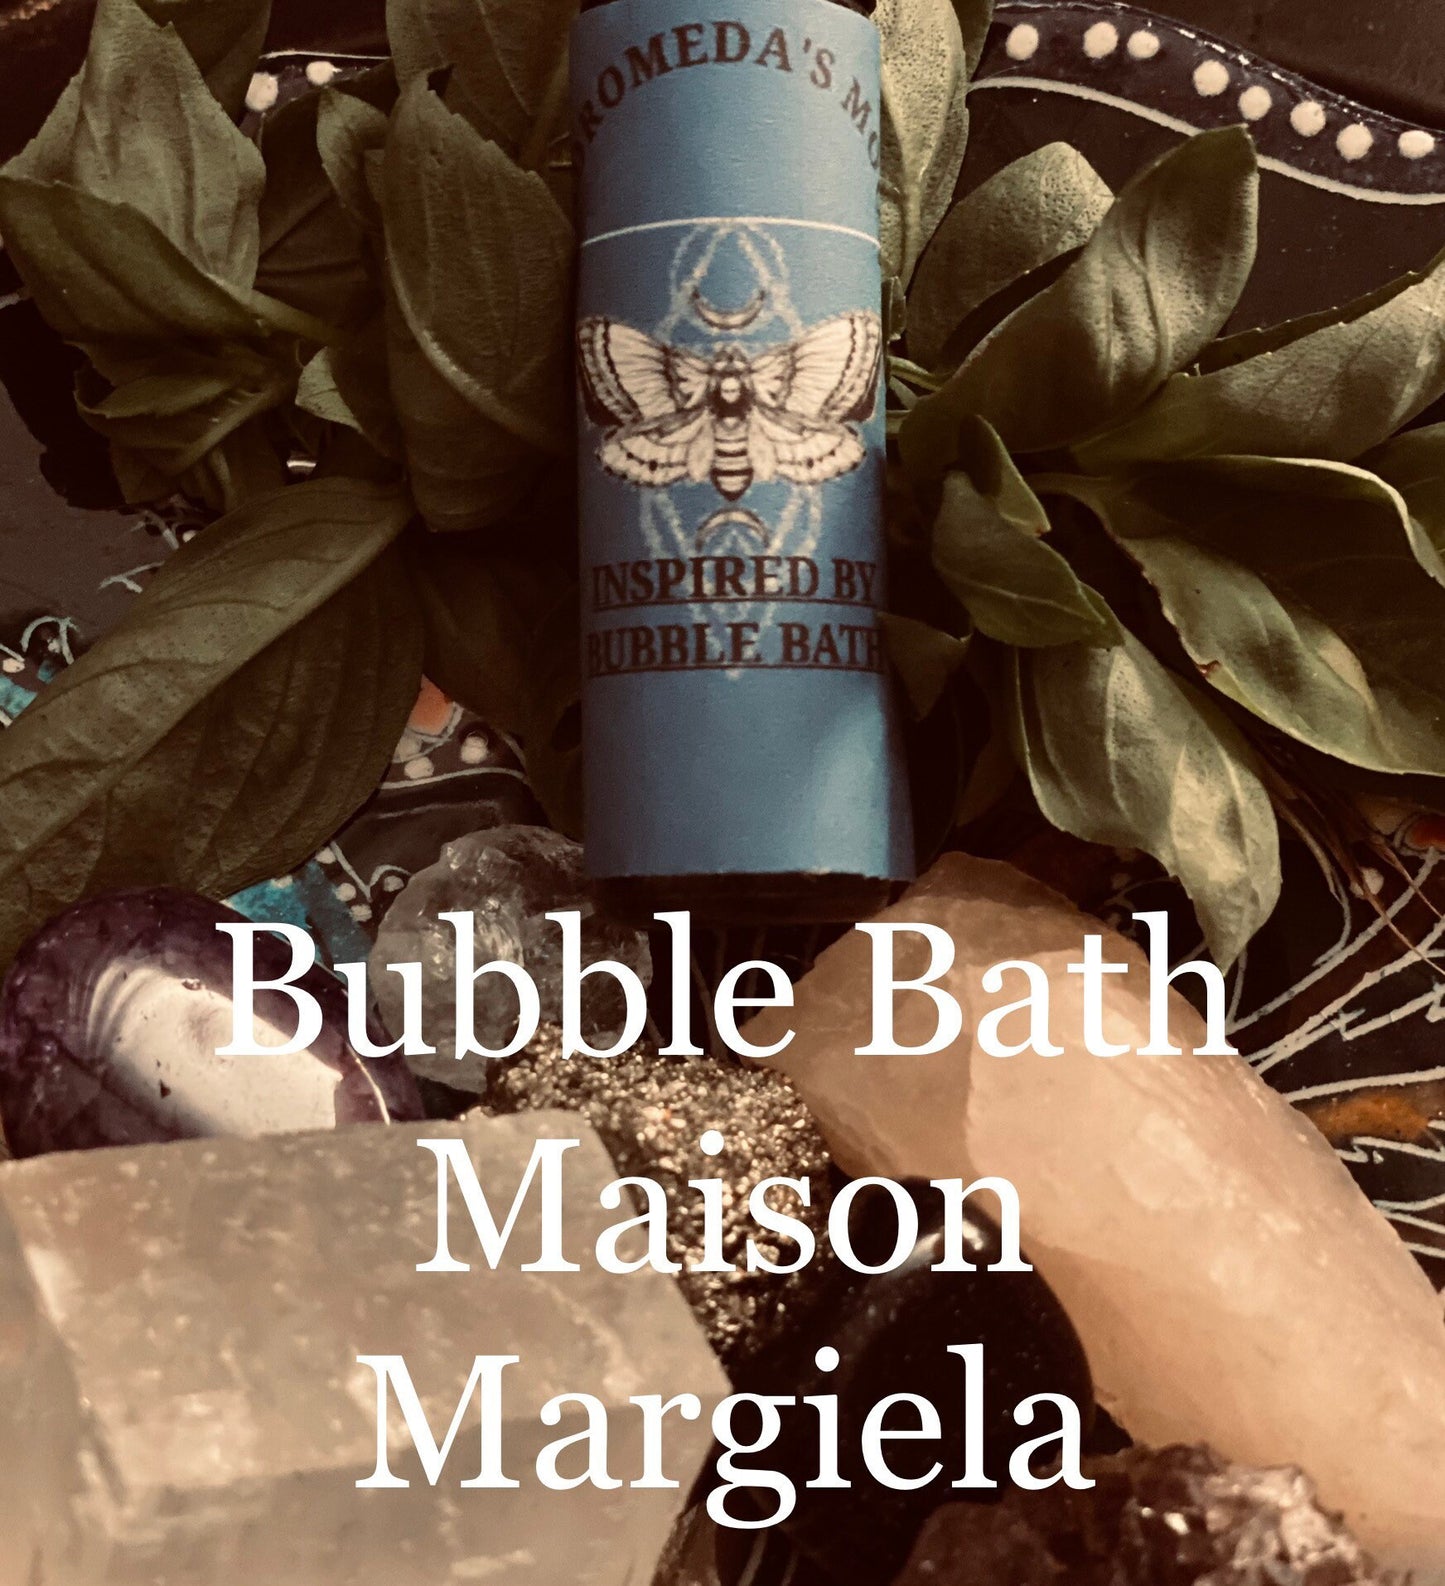 Inspired by Bubble Bath Eau de Parfum